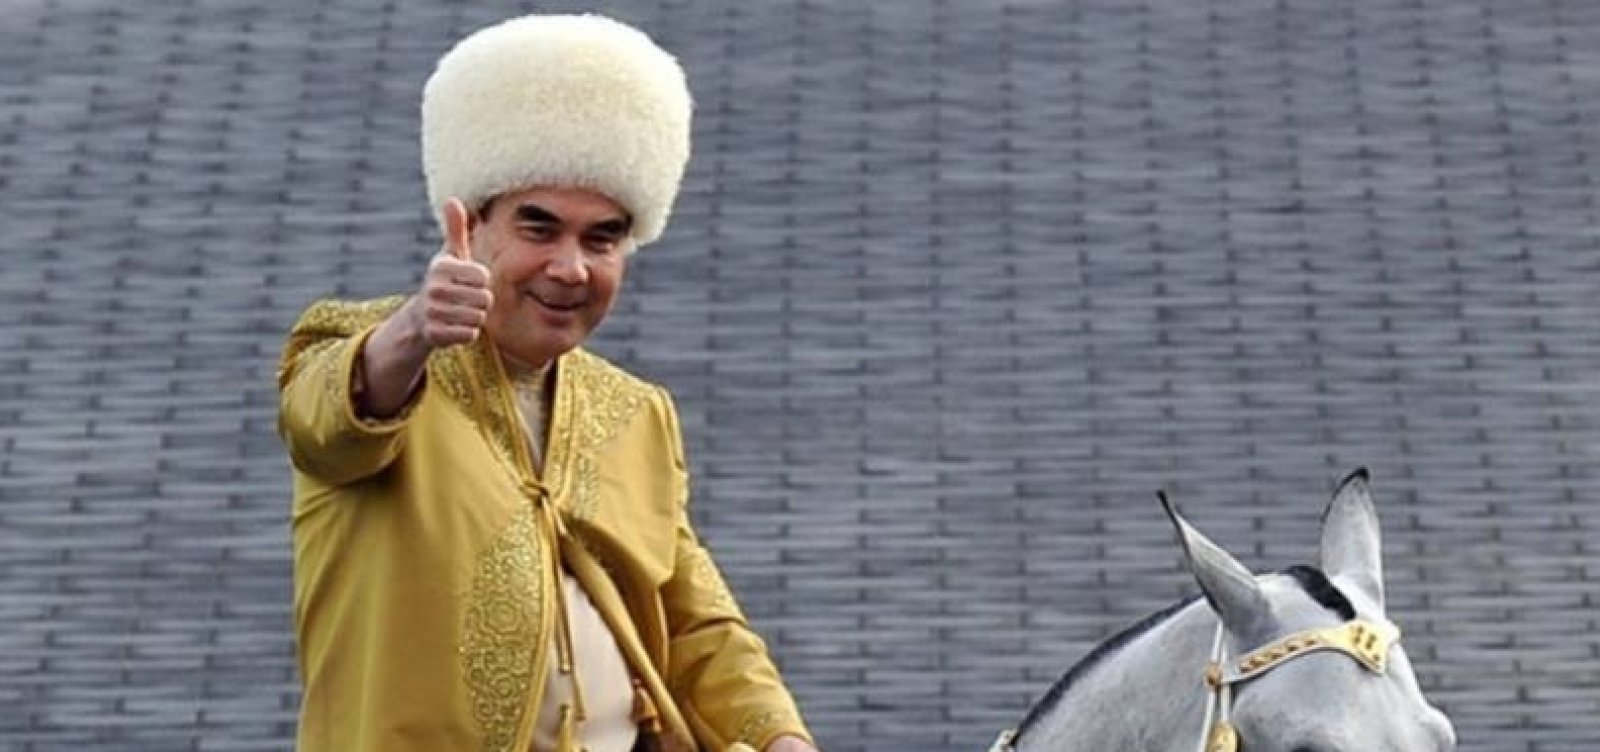 Ditador do Turcomenistão proíbe a palavra coronavírus no país